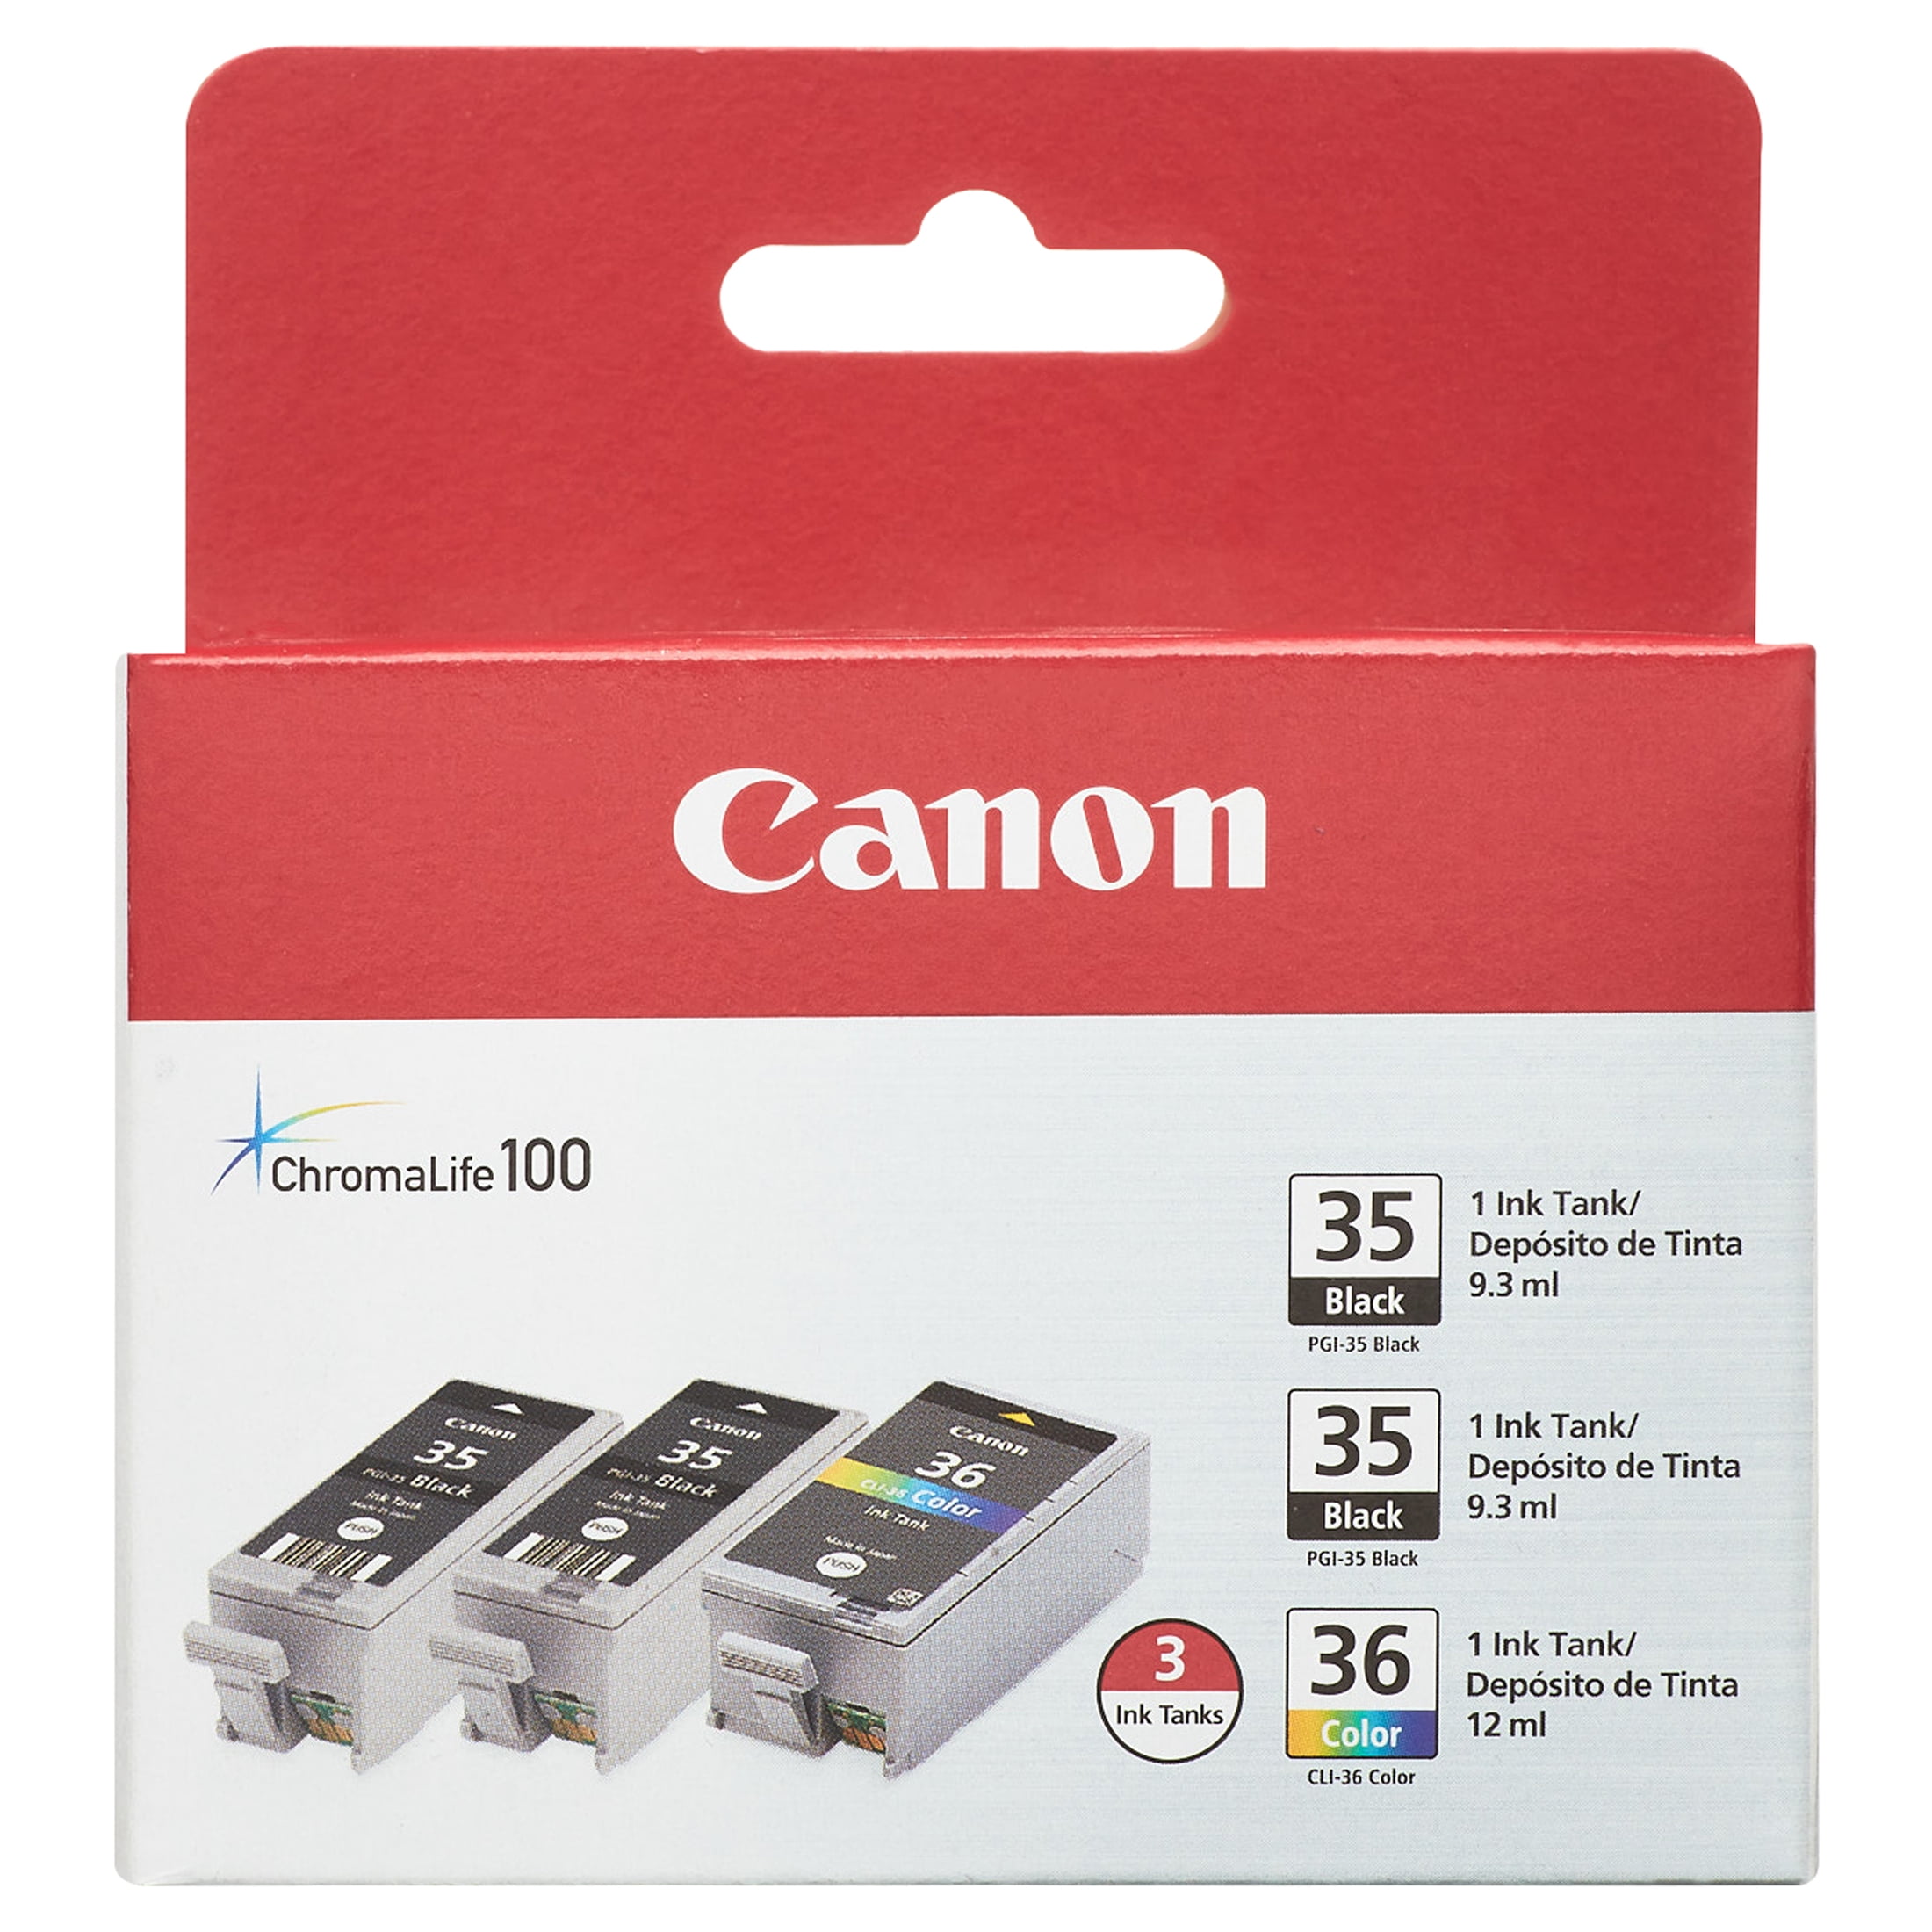 Canon Pgi-35/Cli-36 Value Pack Printer Cartridges